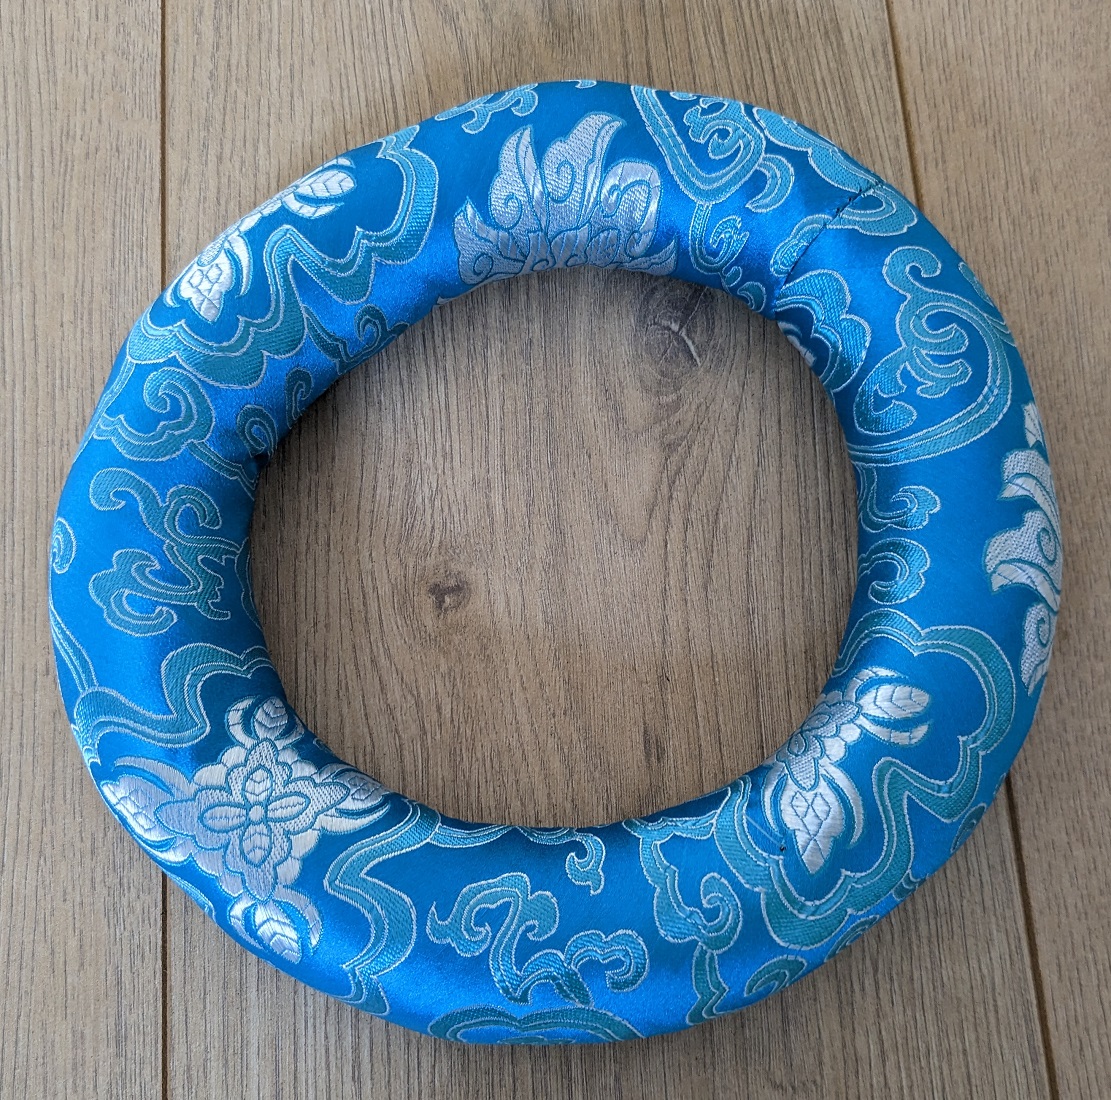 Tibetan Bowl Ring Cushion 20 cm Diameter Turquoise